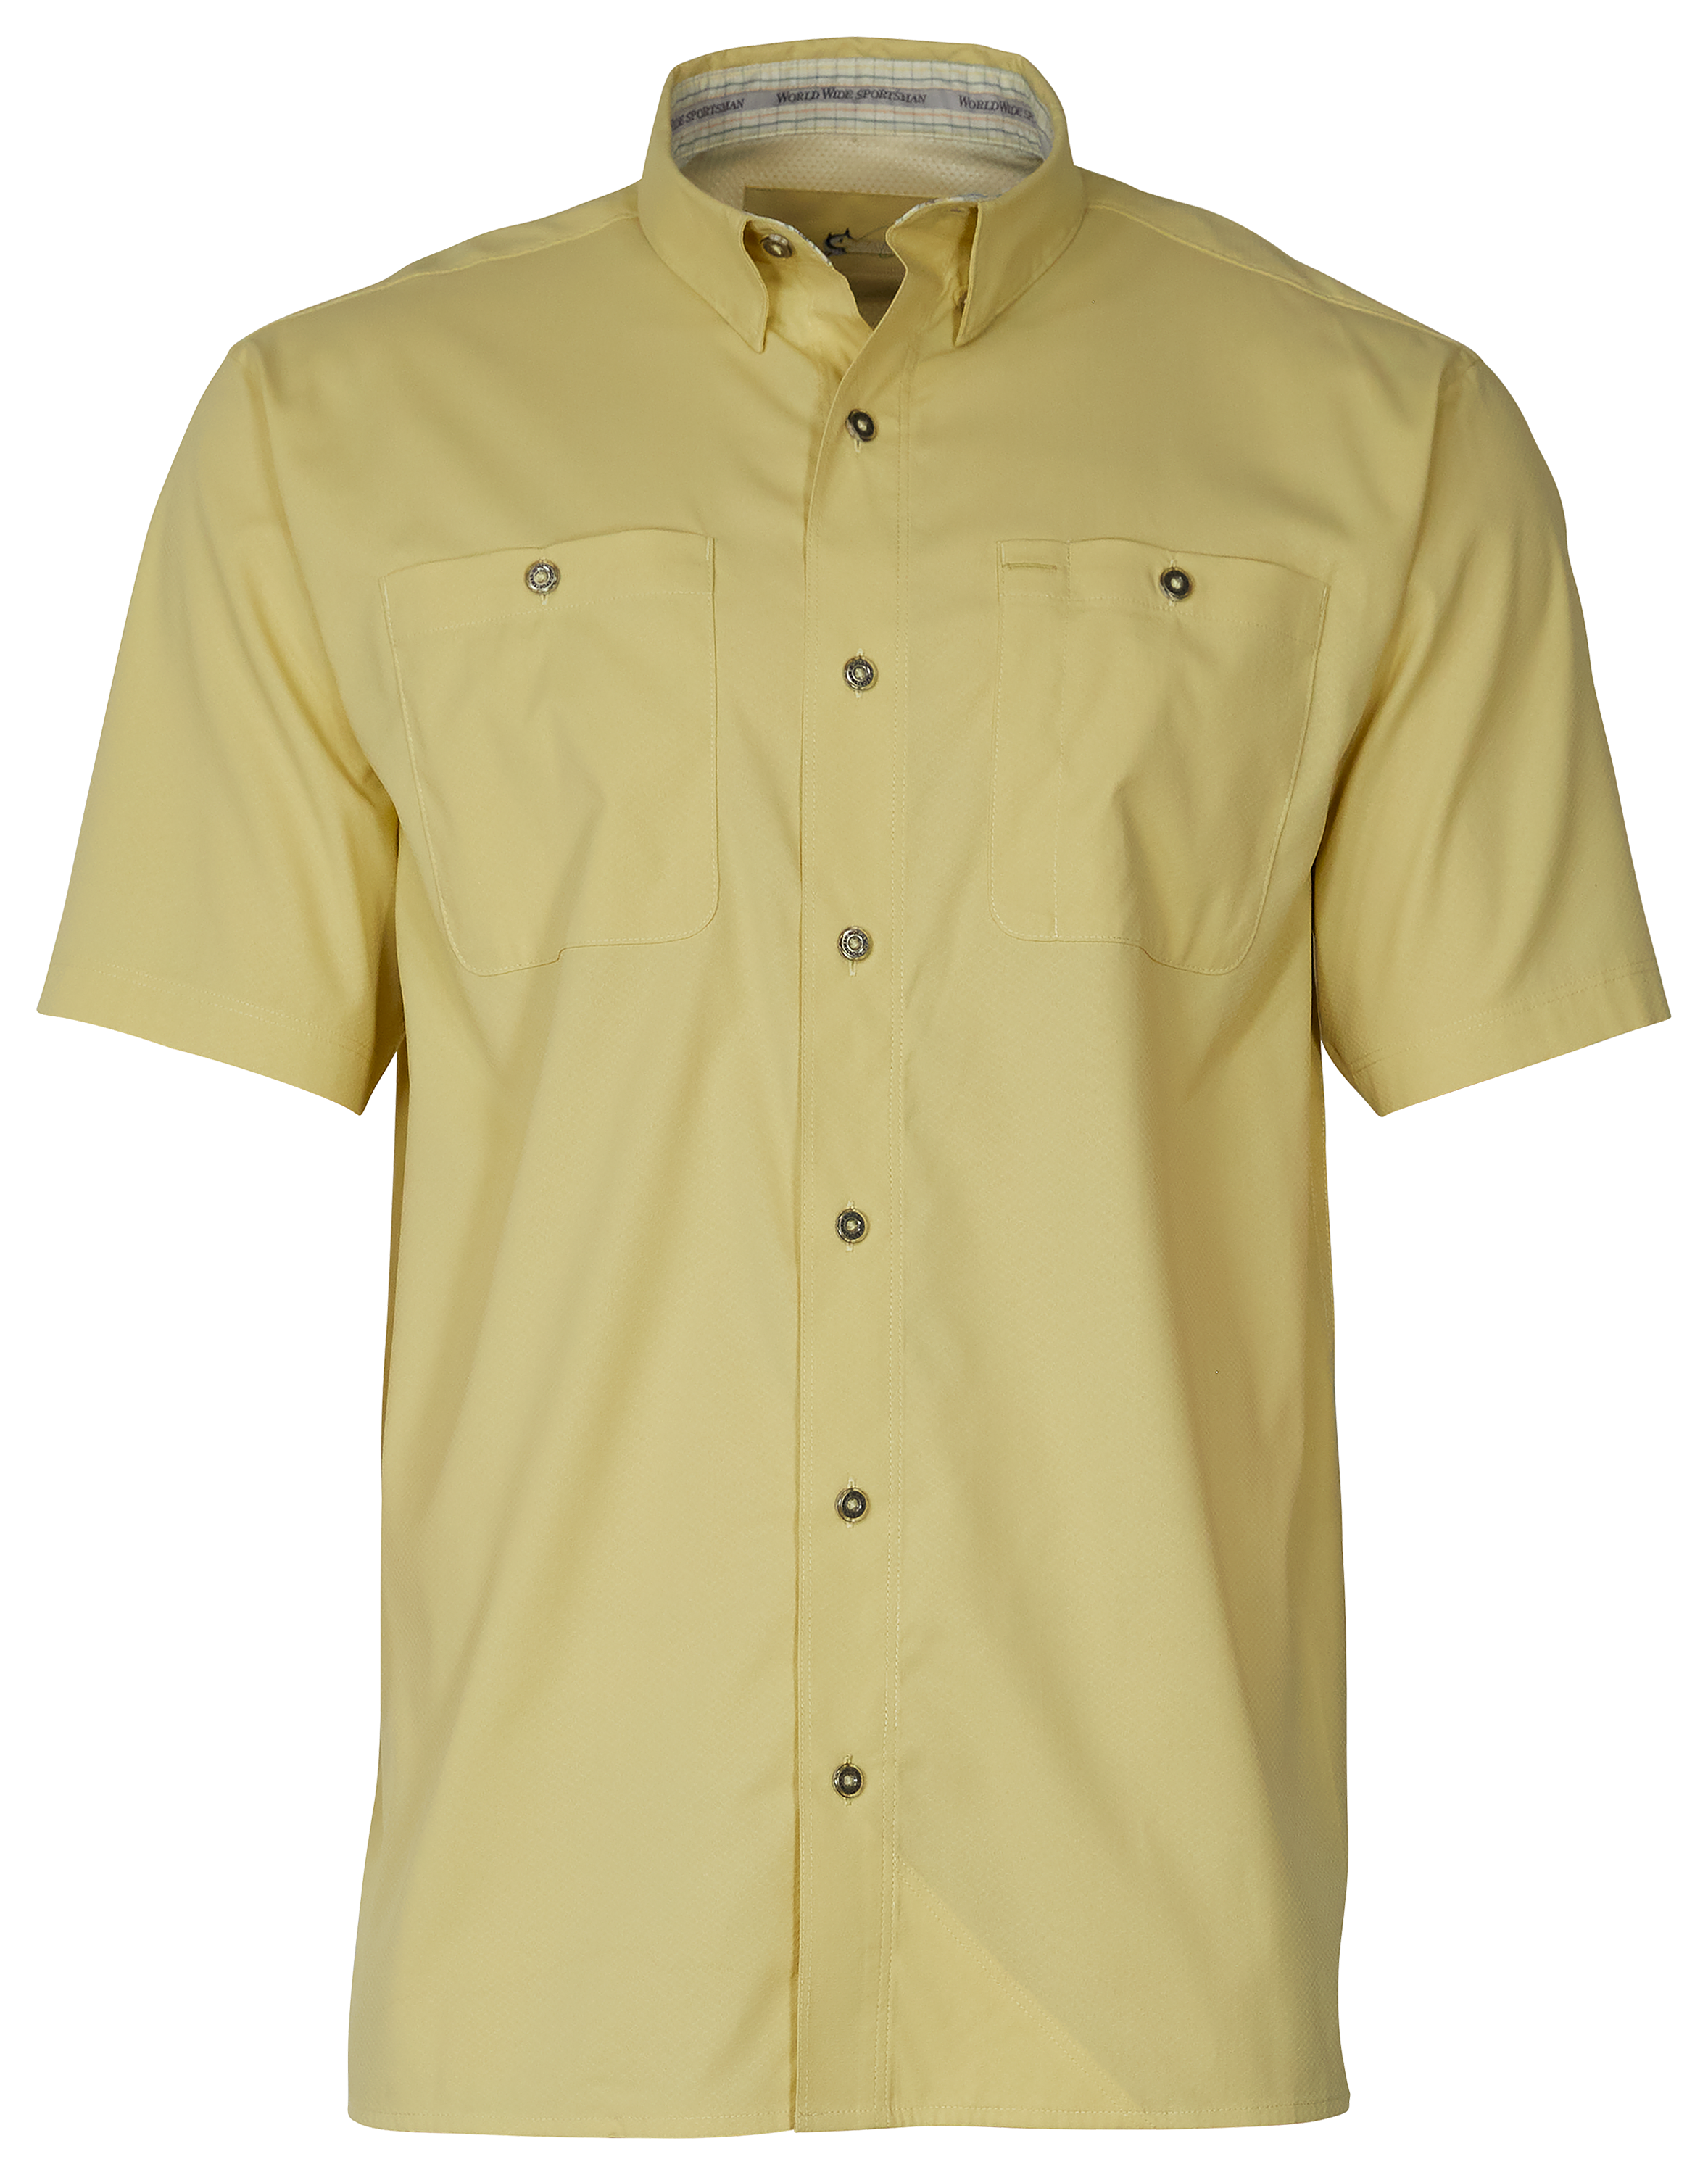 World Wide Sportsman Ultimate Angler Solid Short-Sleeve Shirt for Men - Golden Mist - L